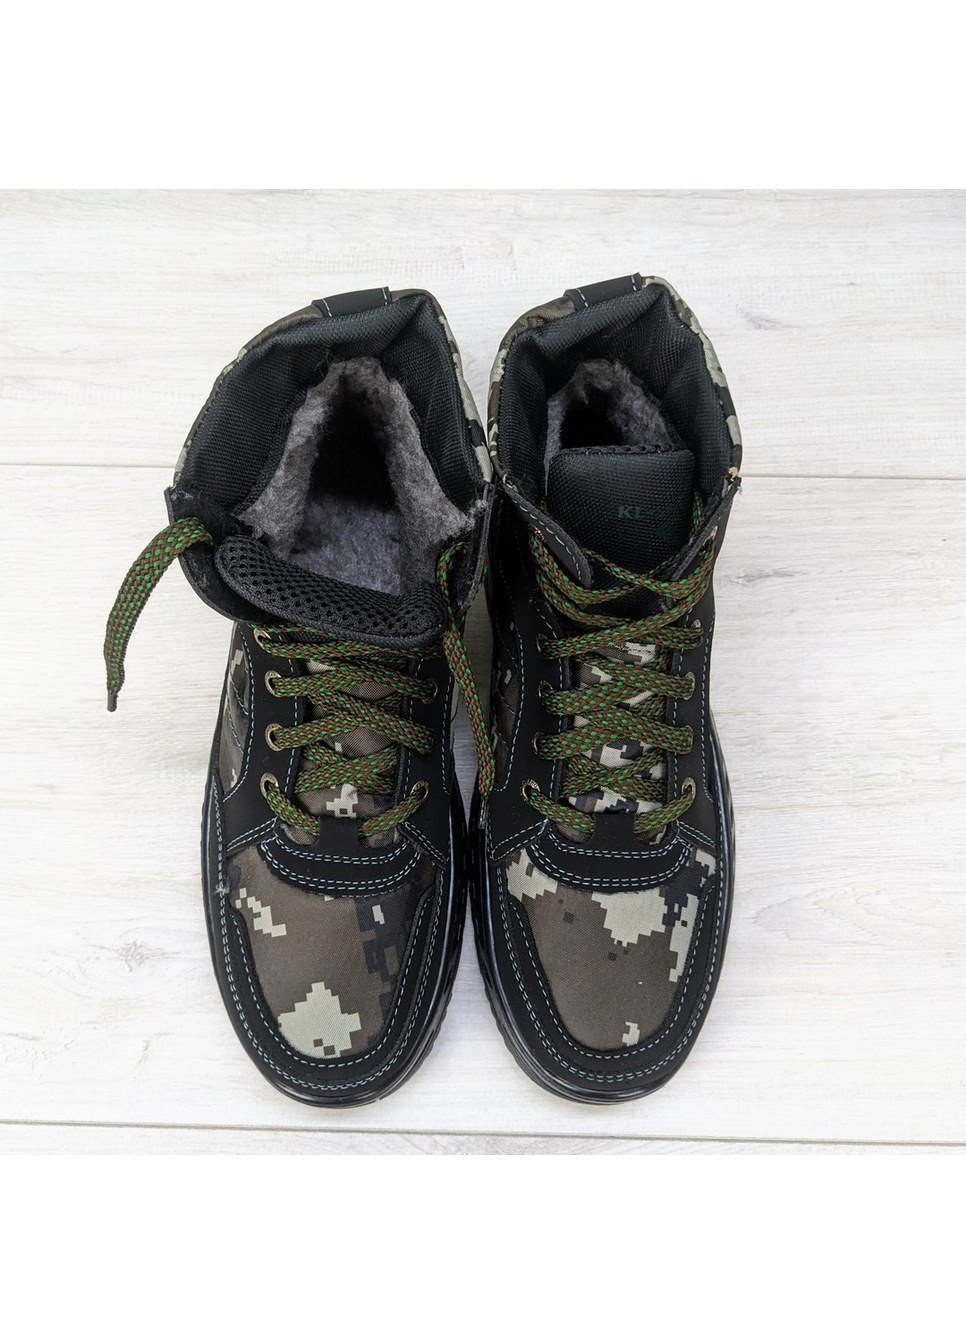 Черные зимние ботинки мужские зимние камуфляжные Kluchkovskyy